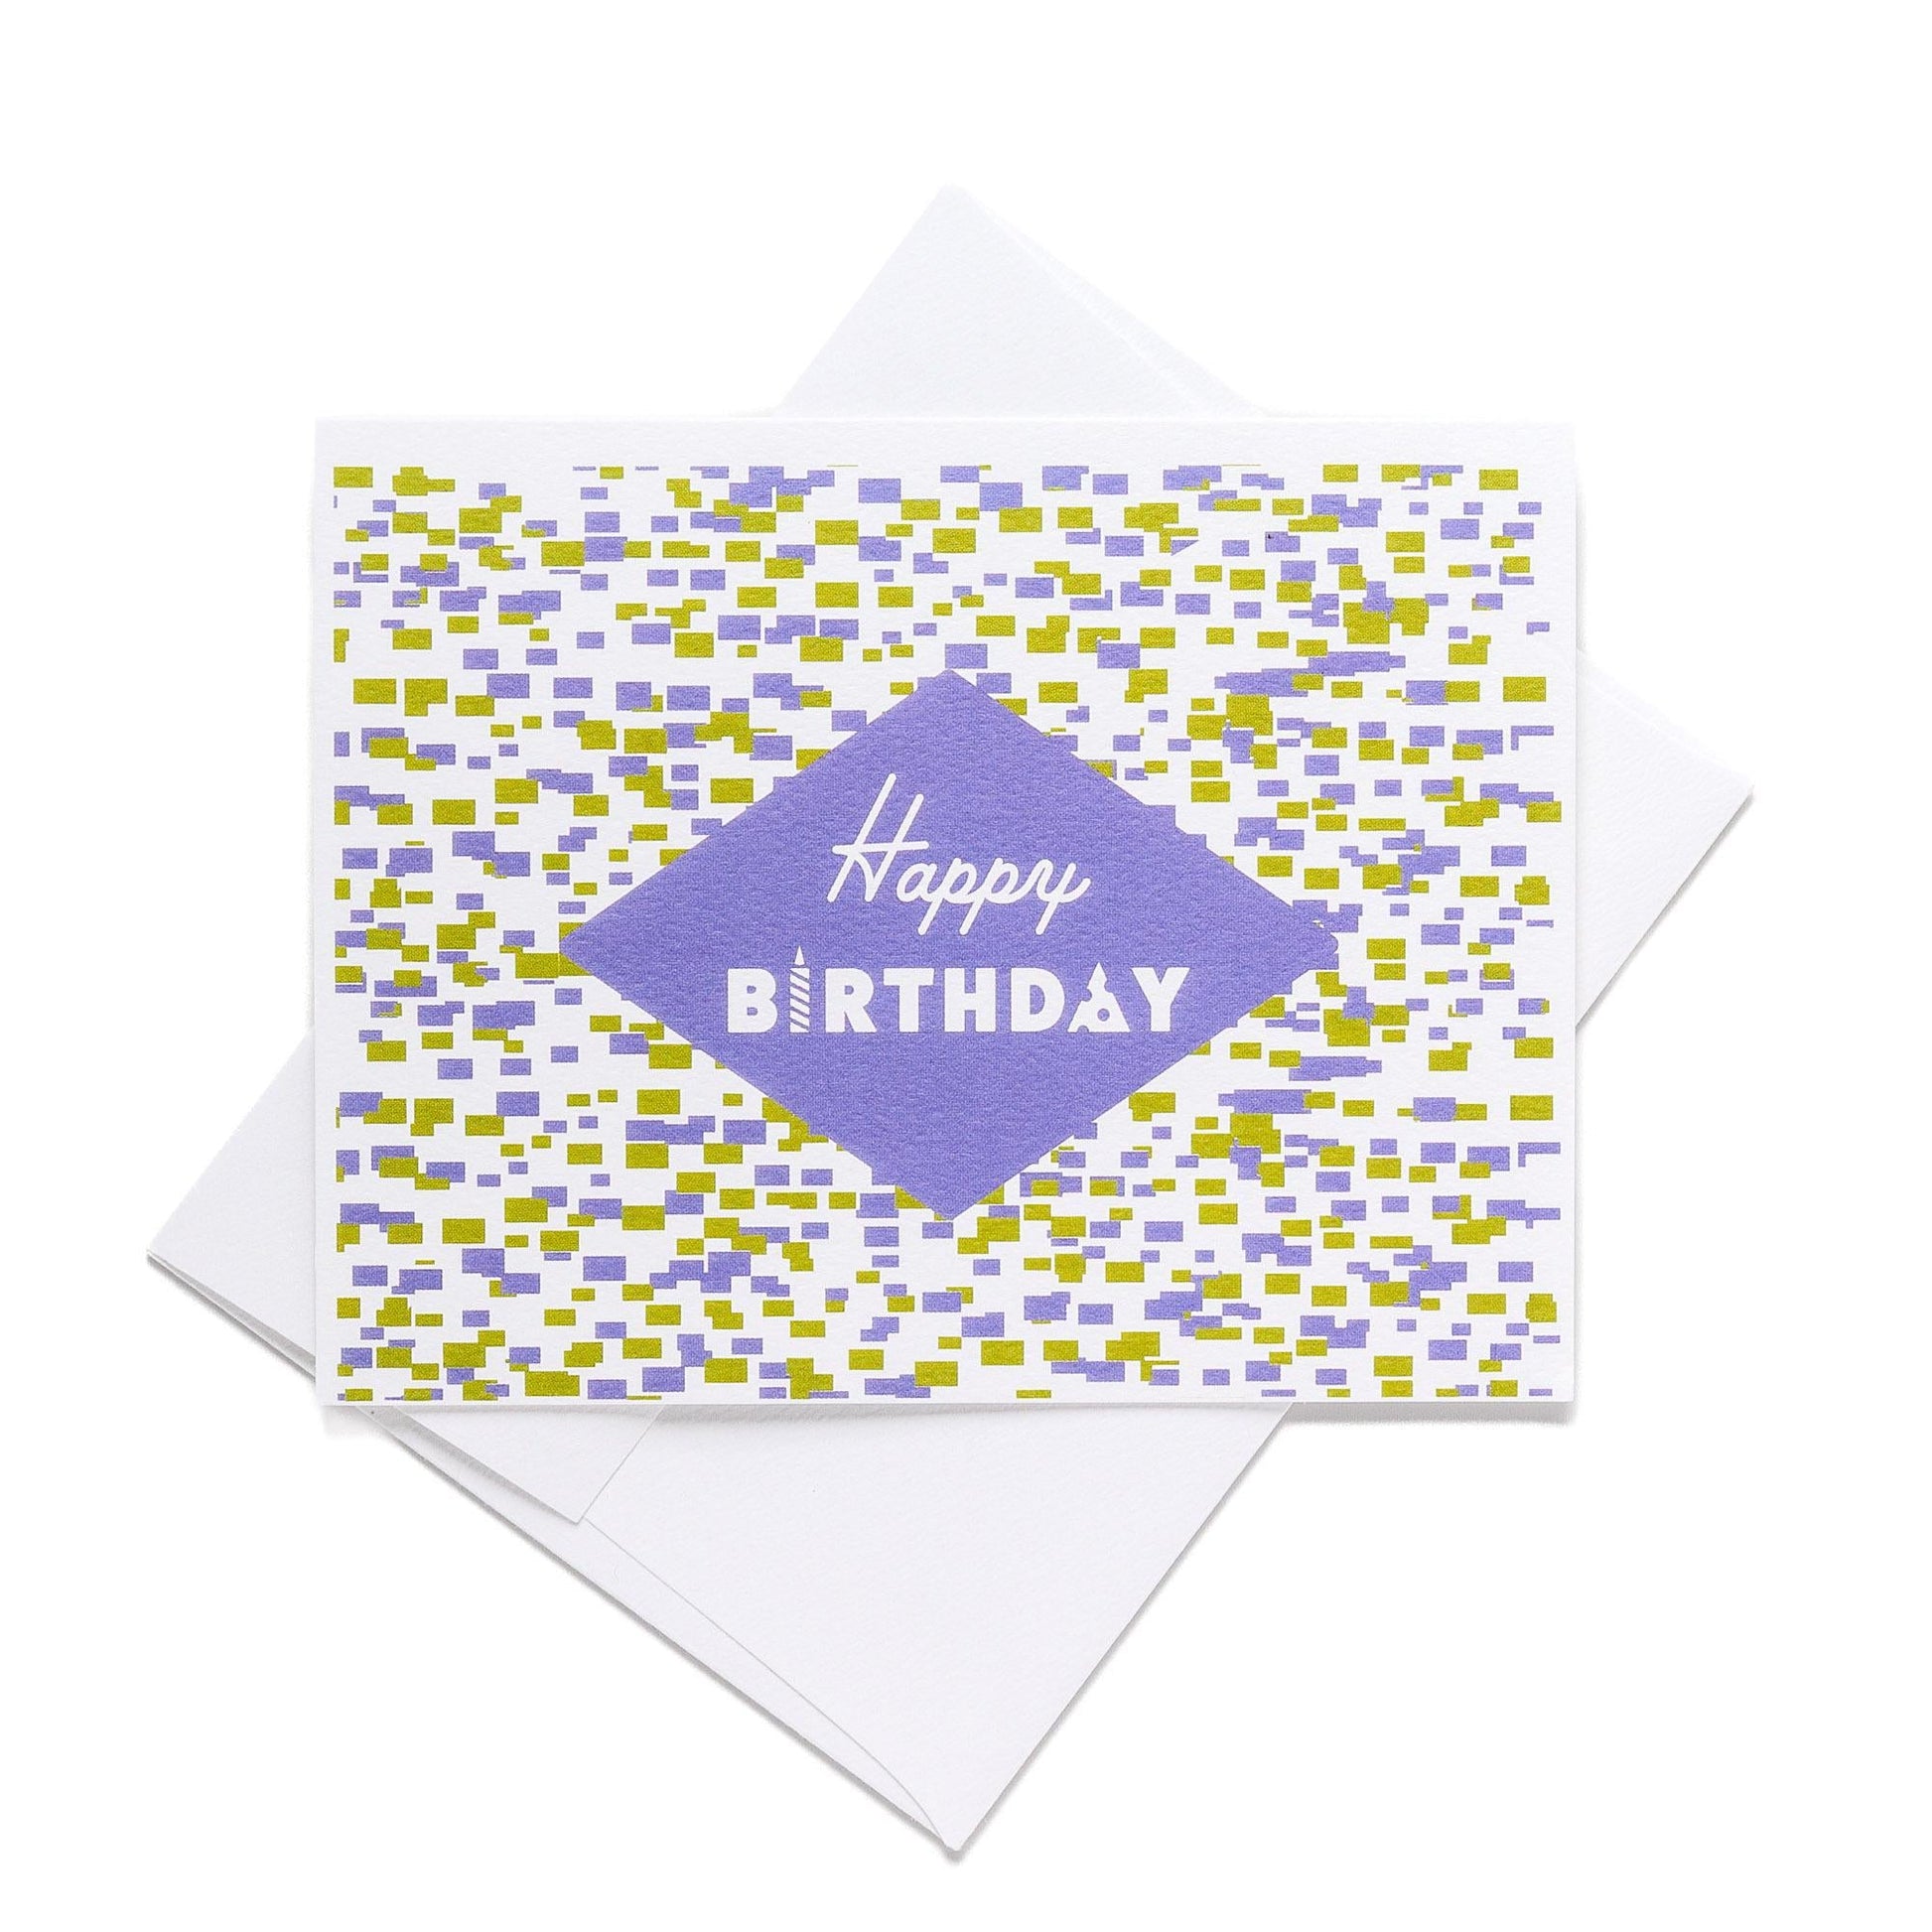 Happy Birthday Note Card - Purple Confetti - Blue Kite Press